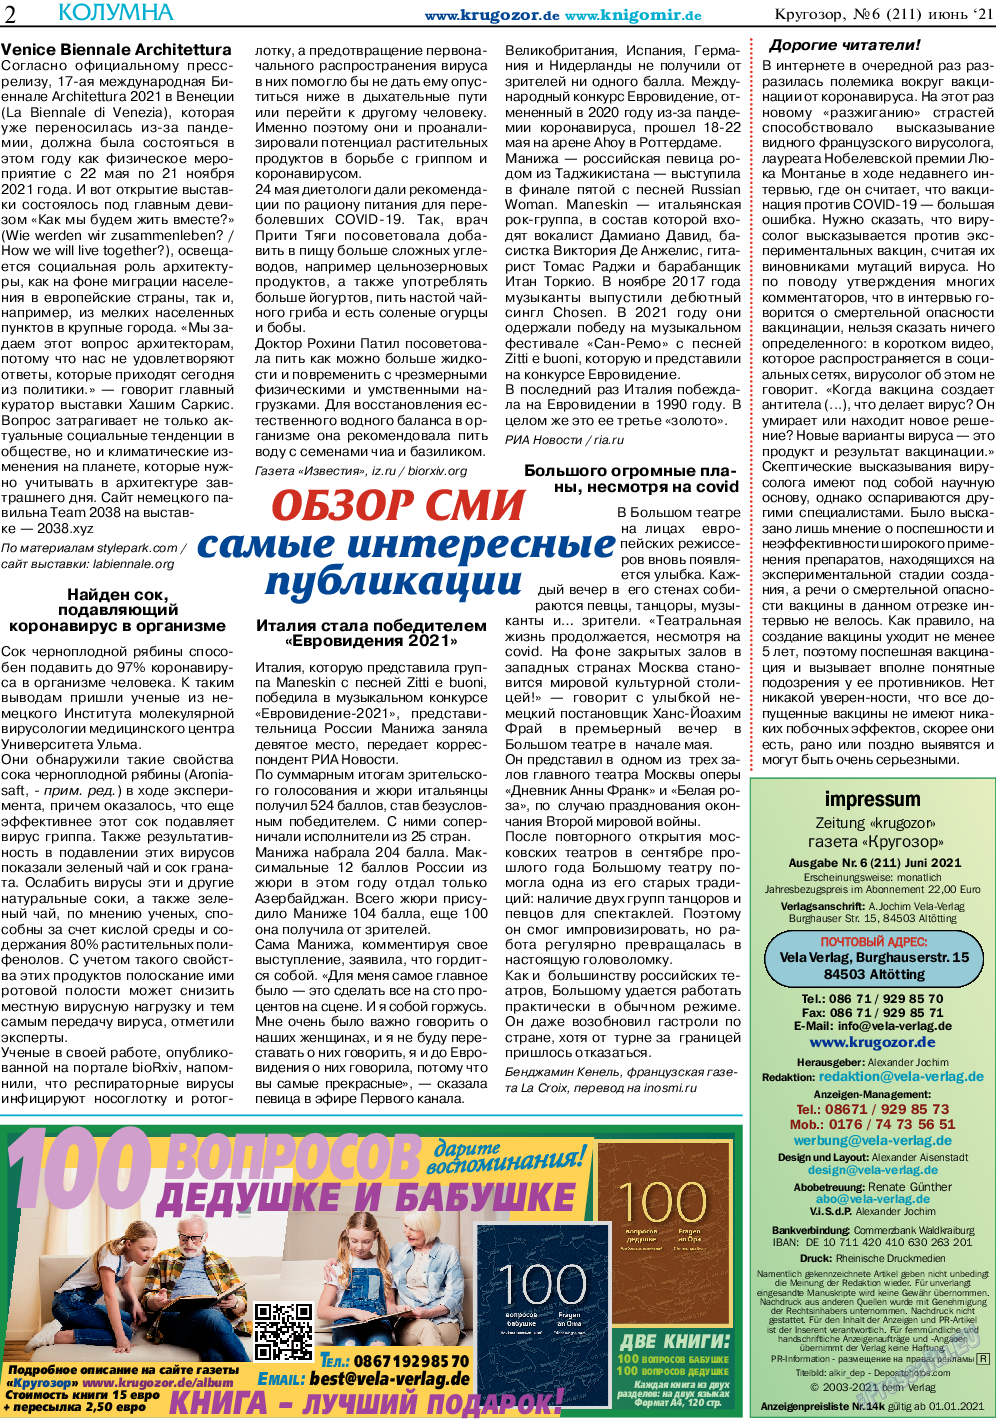 Кругозор, газета. 2021 №6 стр.2